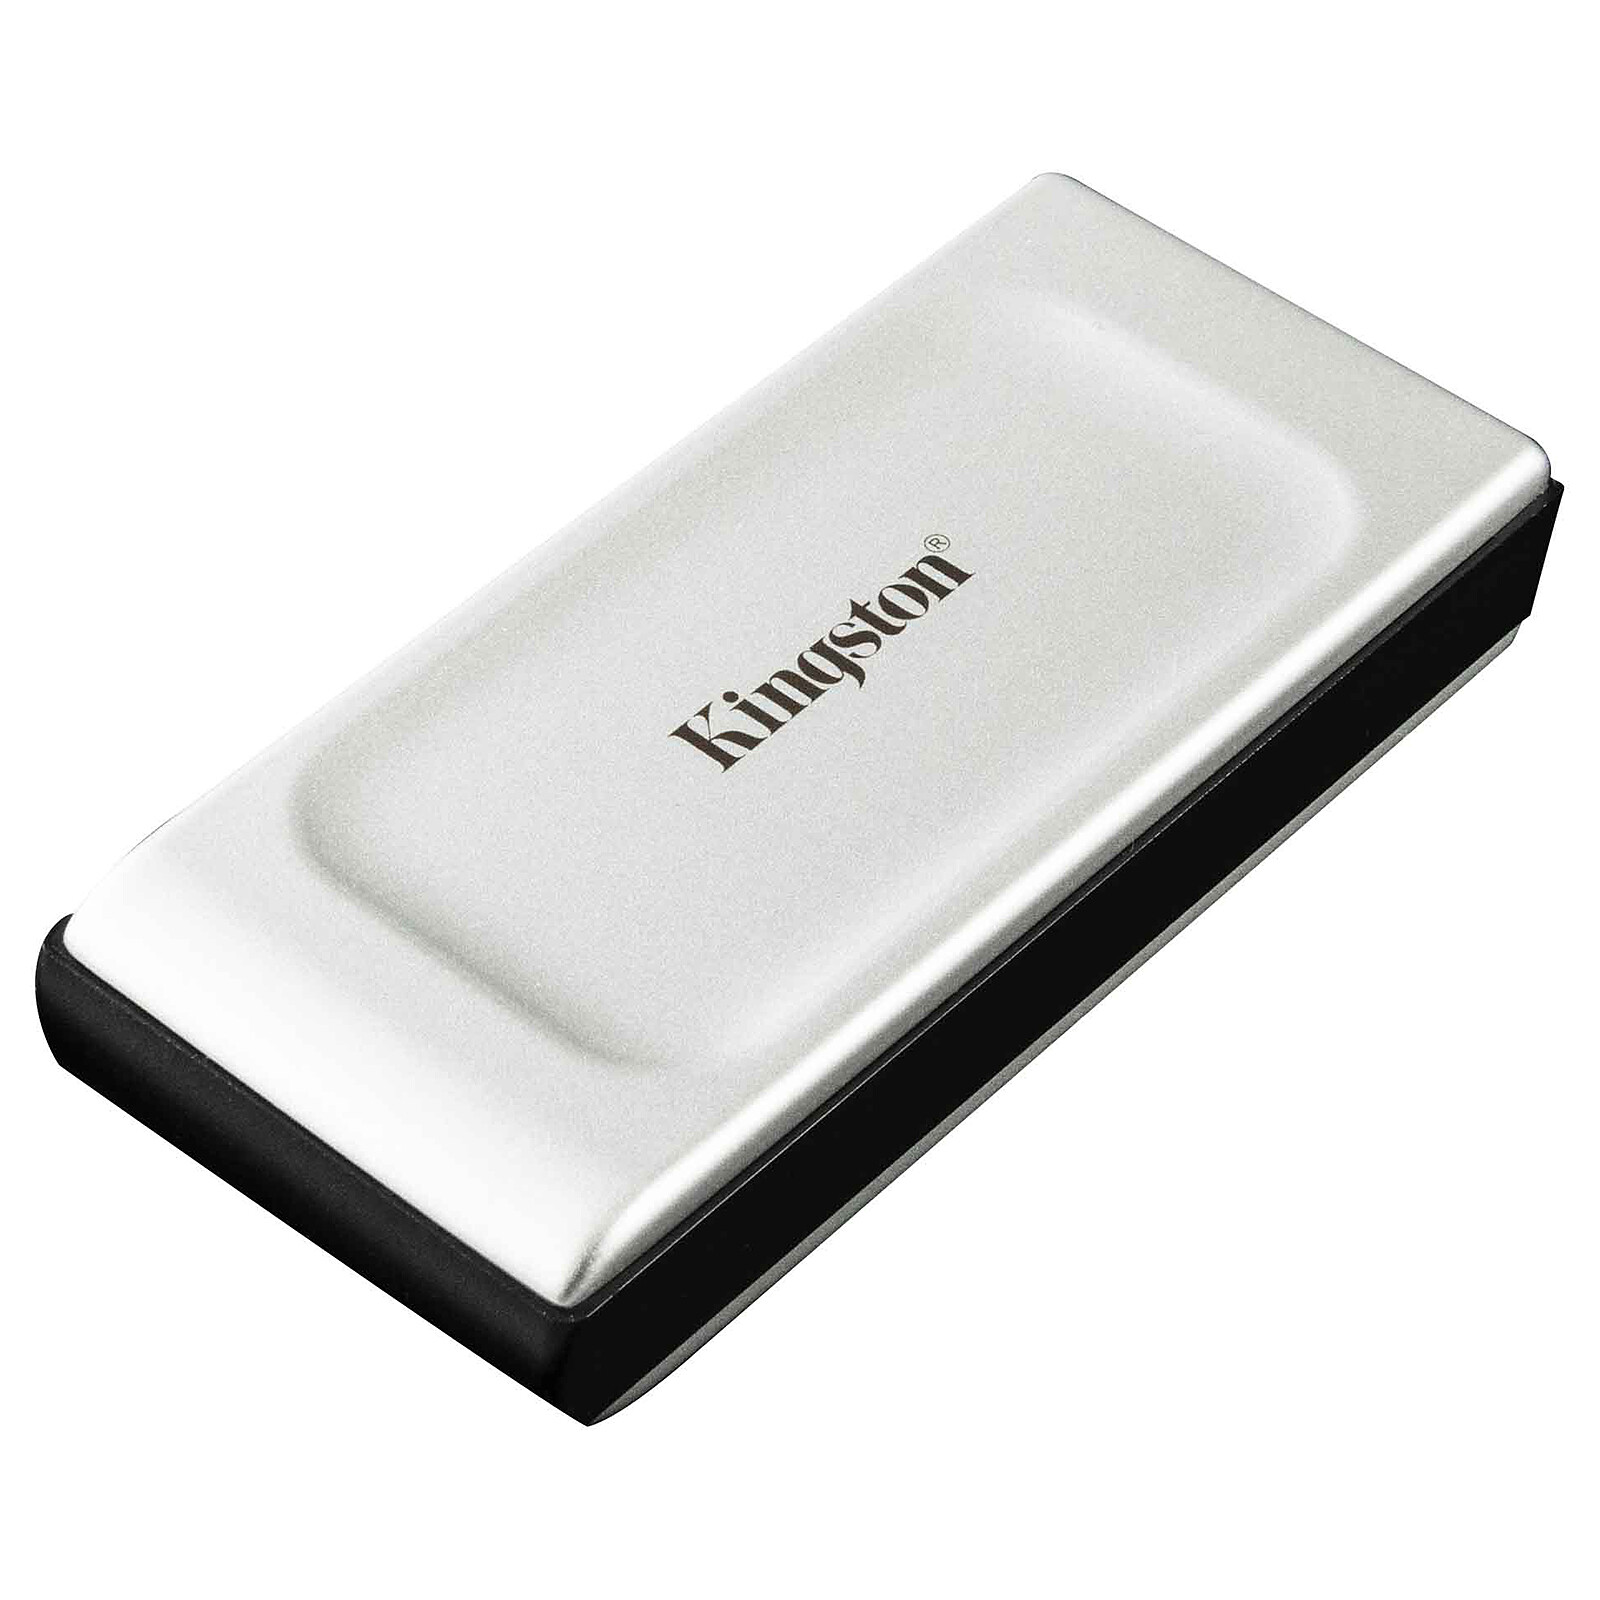 SanDisk SSD portatile 1TB - Hard disk esterno - LDLC